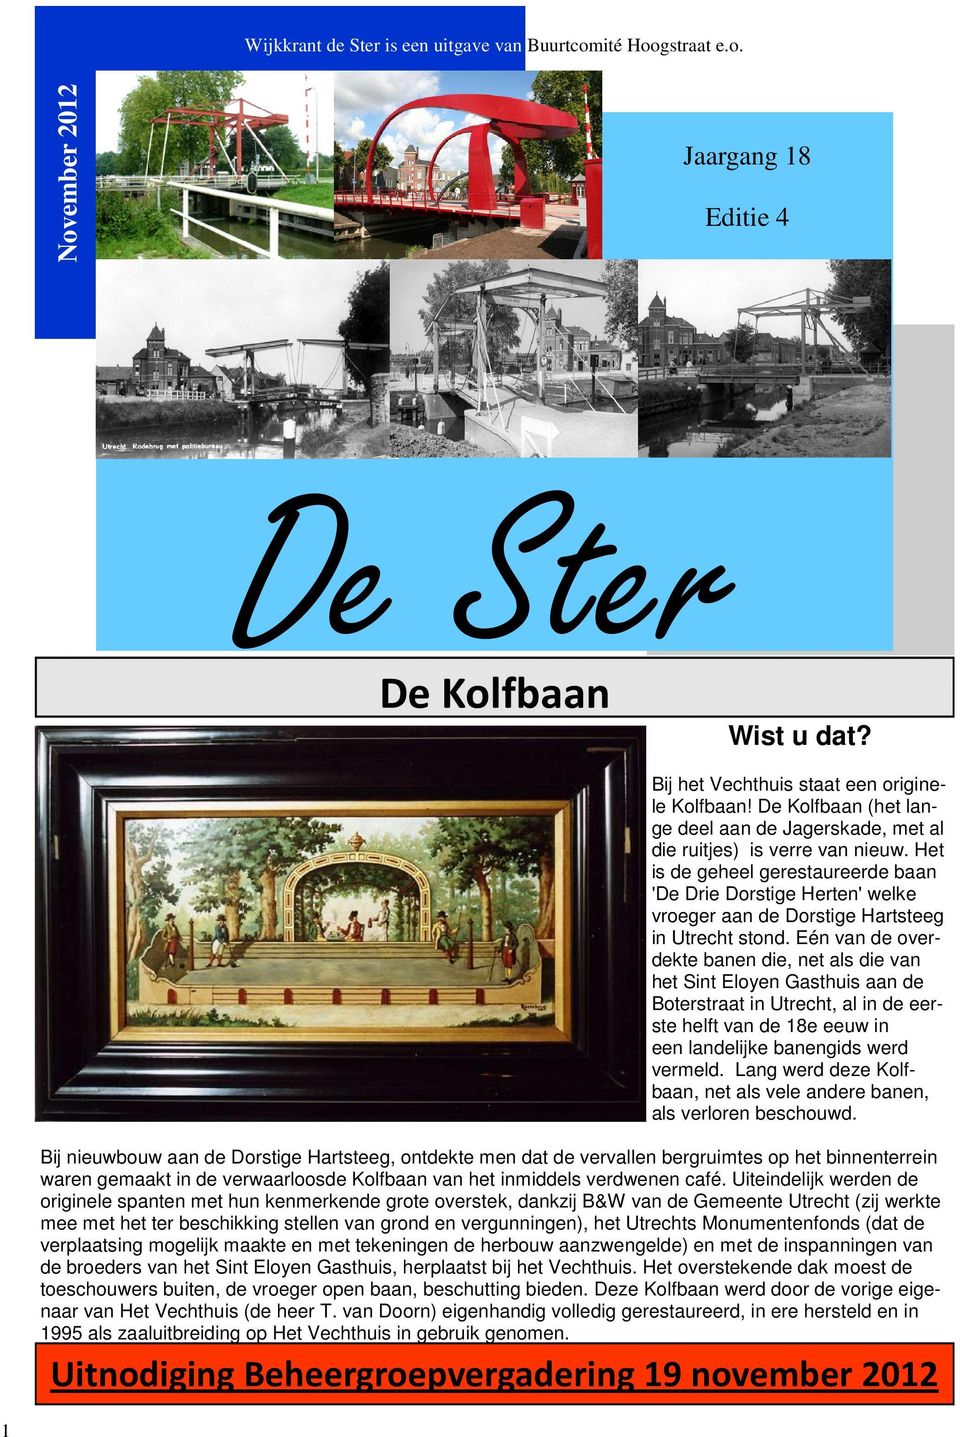 Het is de geheel gerestaureerde baan 'De Drie Dorstige Herten' welke vroeger aan de Dorstige Hartsteeg in Utrecht stond.